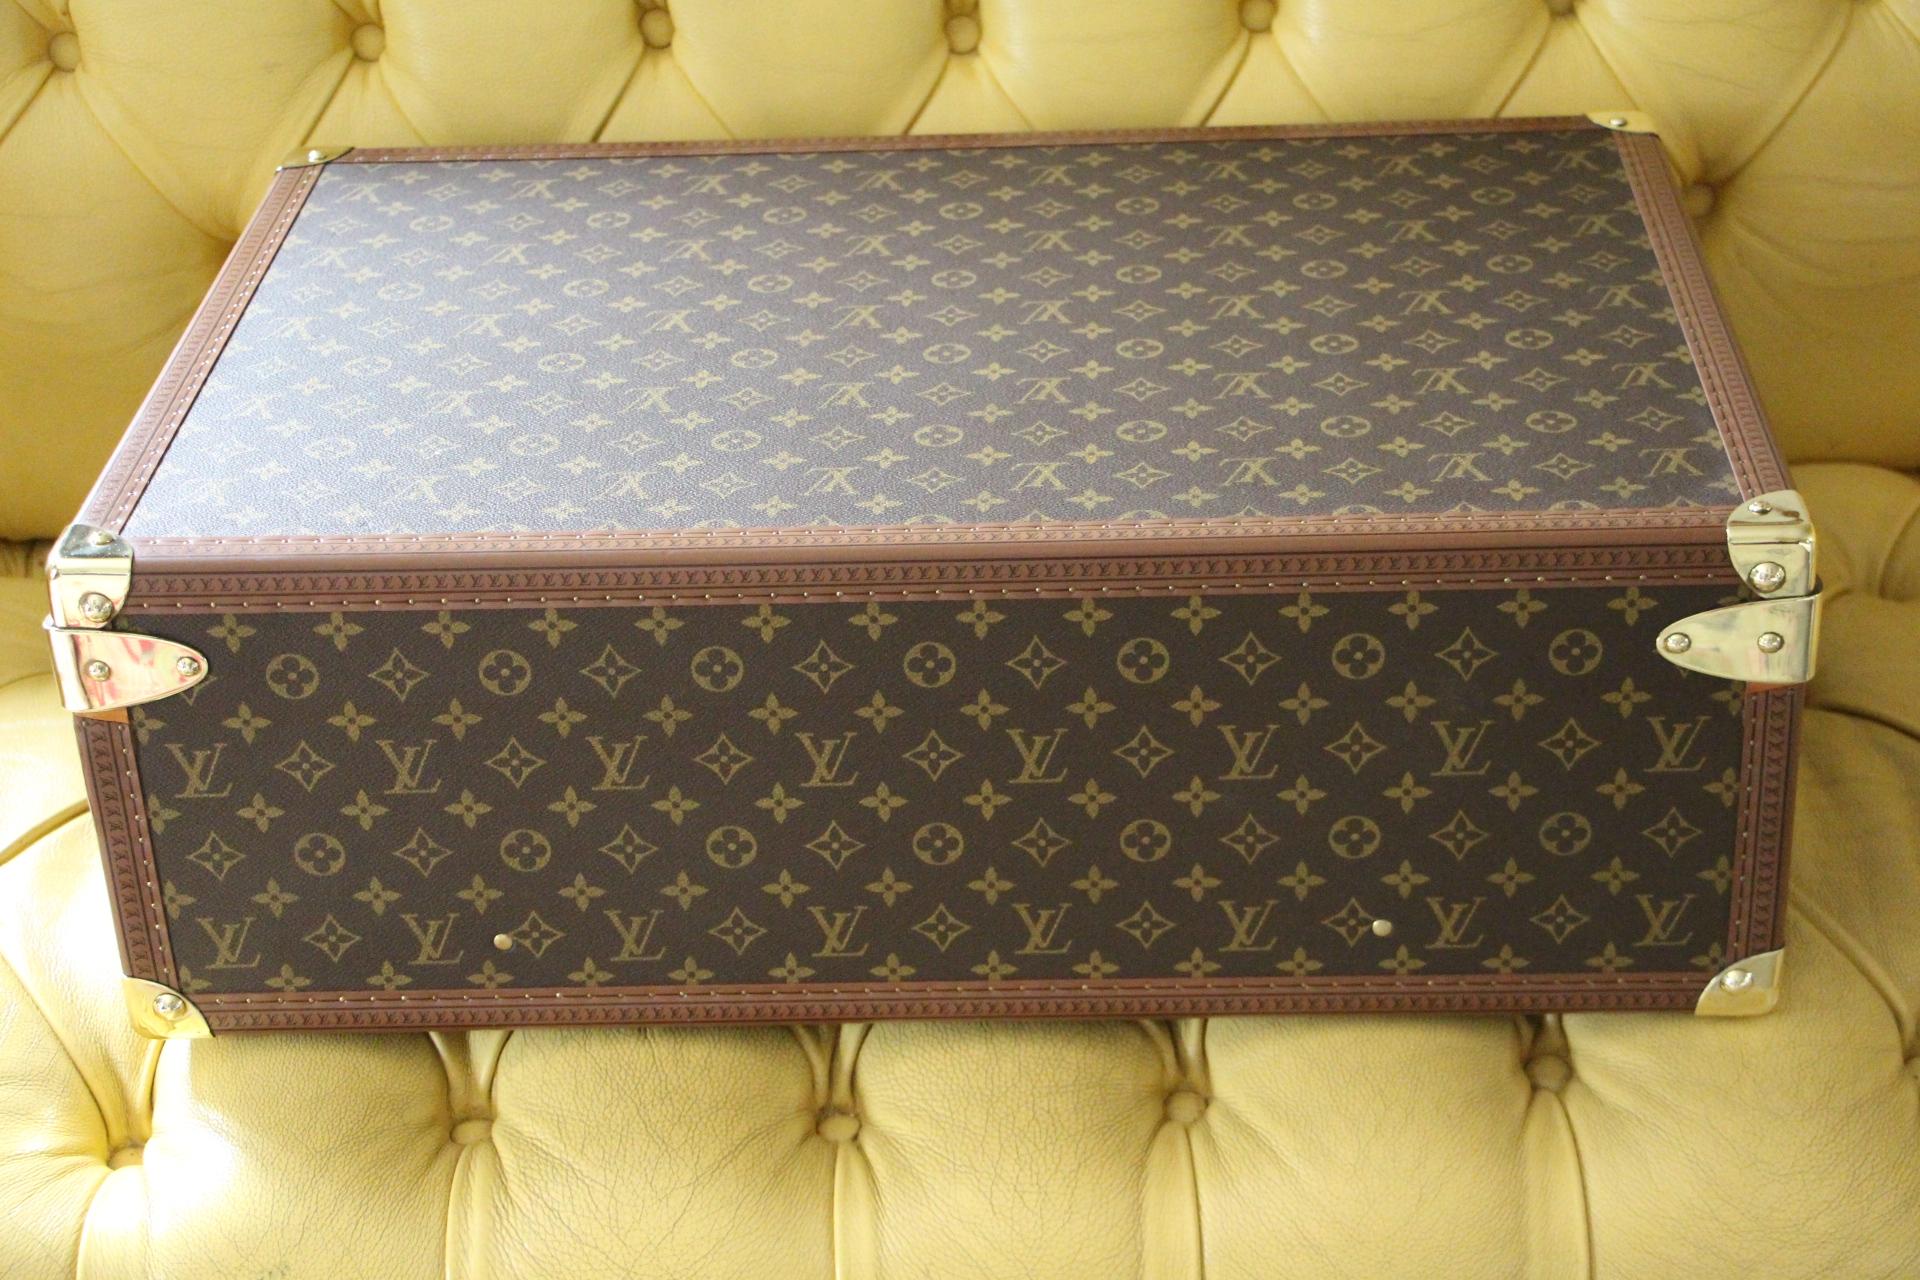  Louis Vuitton Suitcase, Alzer 65 Louis Vuitton Suitcase, Large Vuitton Suitcase 3